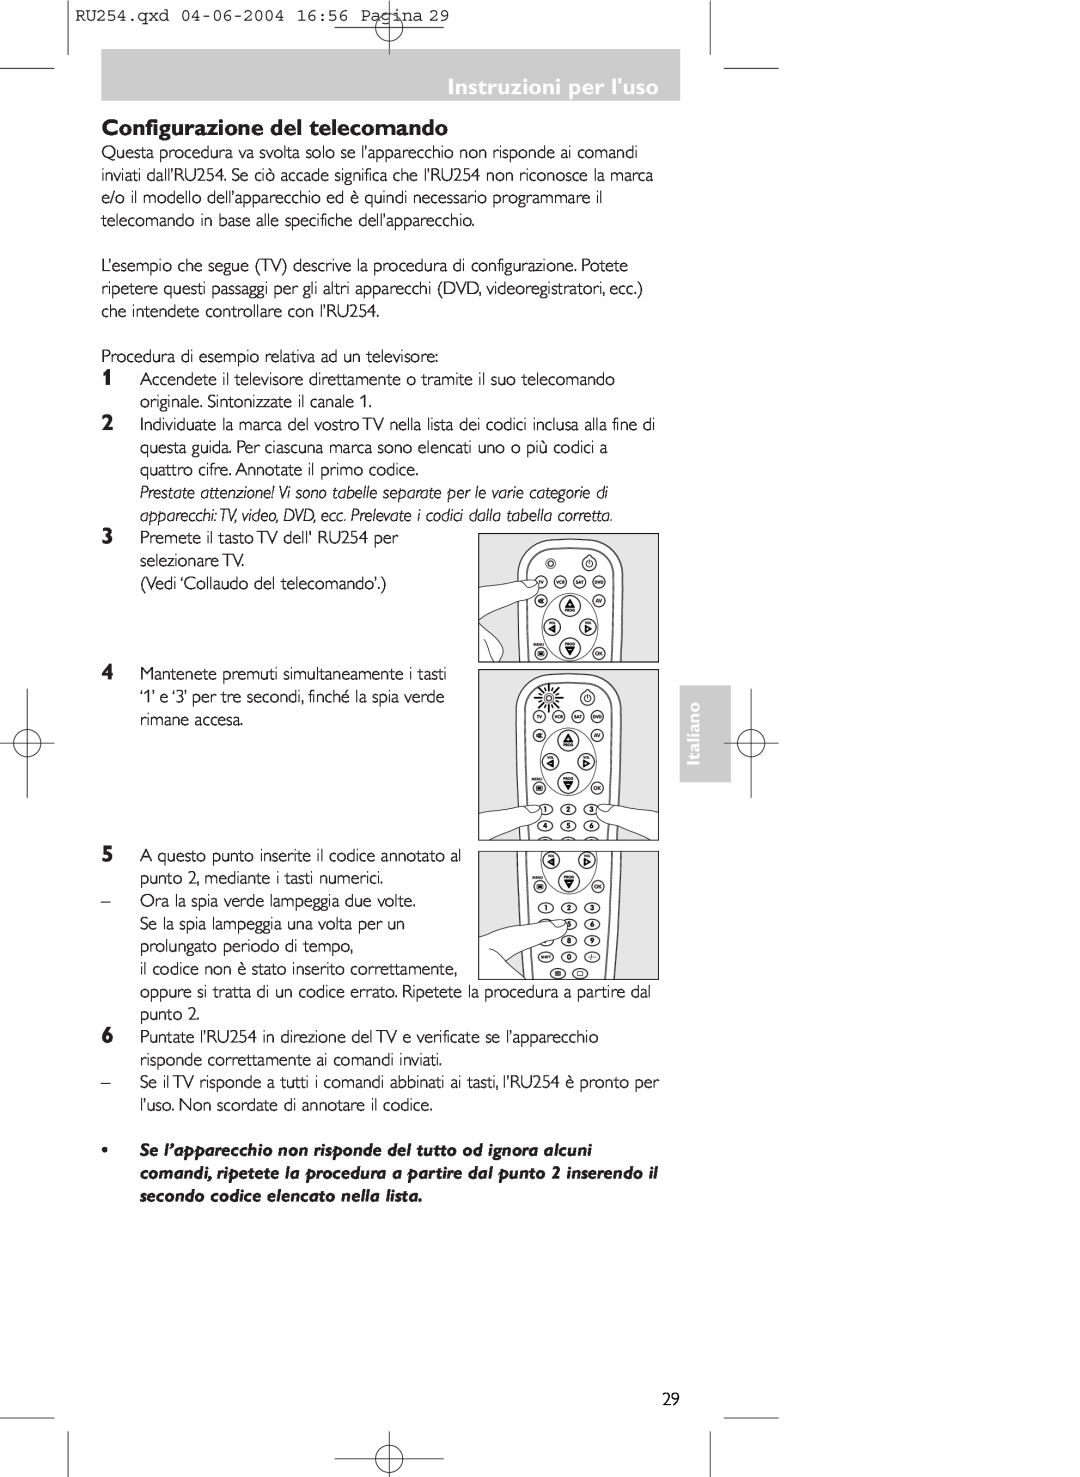 Technicolor - Thomson RU254 manual Instruzioni per luso, Configurazione del telecomando, Italiano 